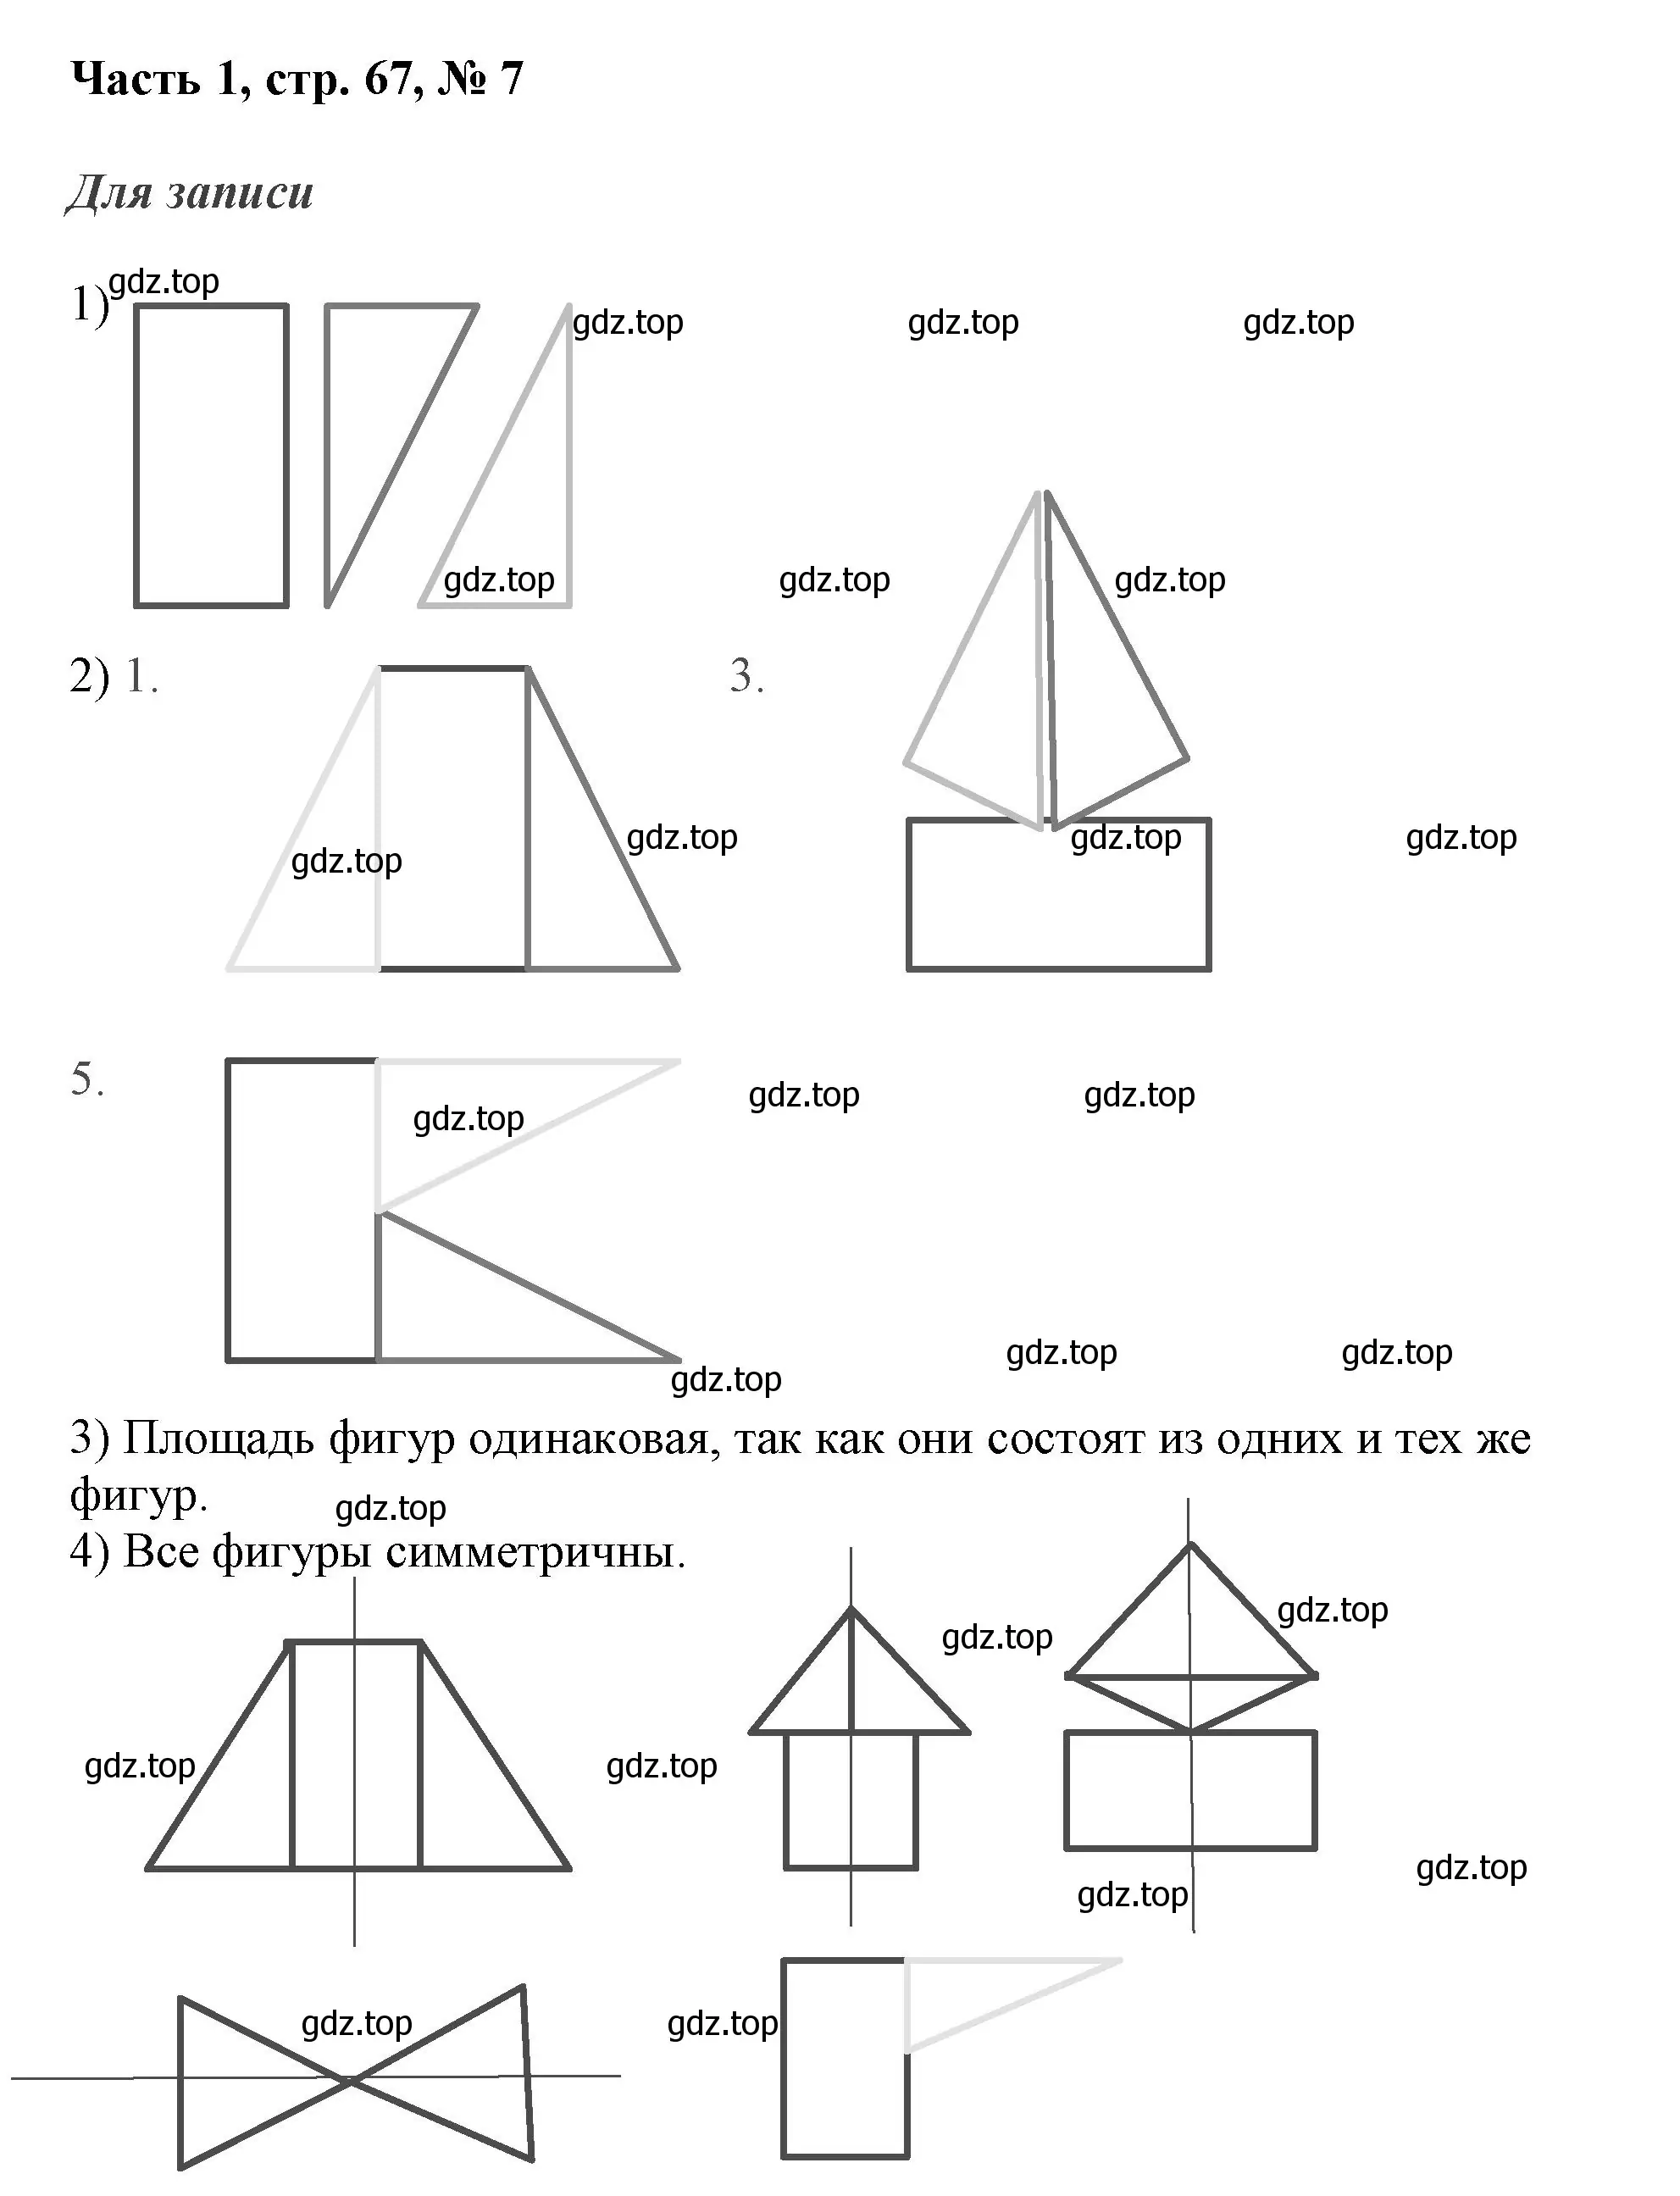 Решение номер 7 (страница 67) гдз по математике 3 класс Моро, Бантова, учебник 1 часть